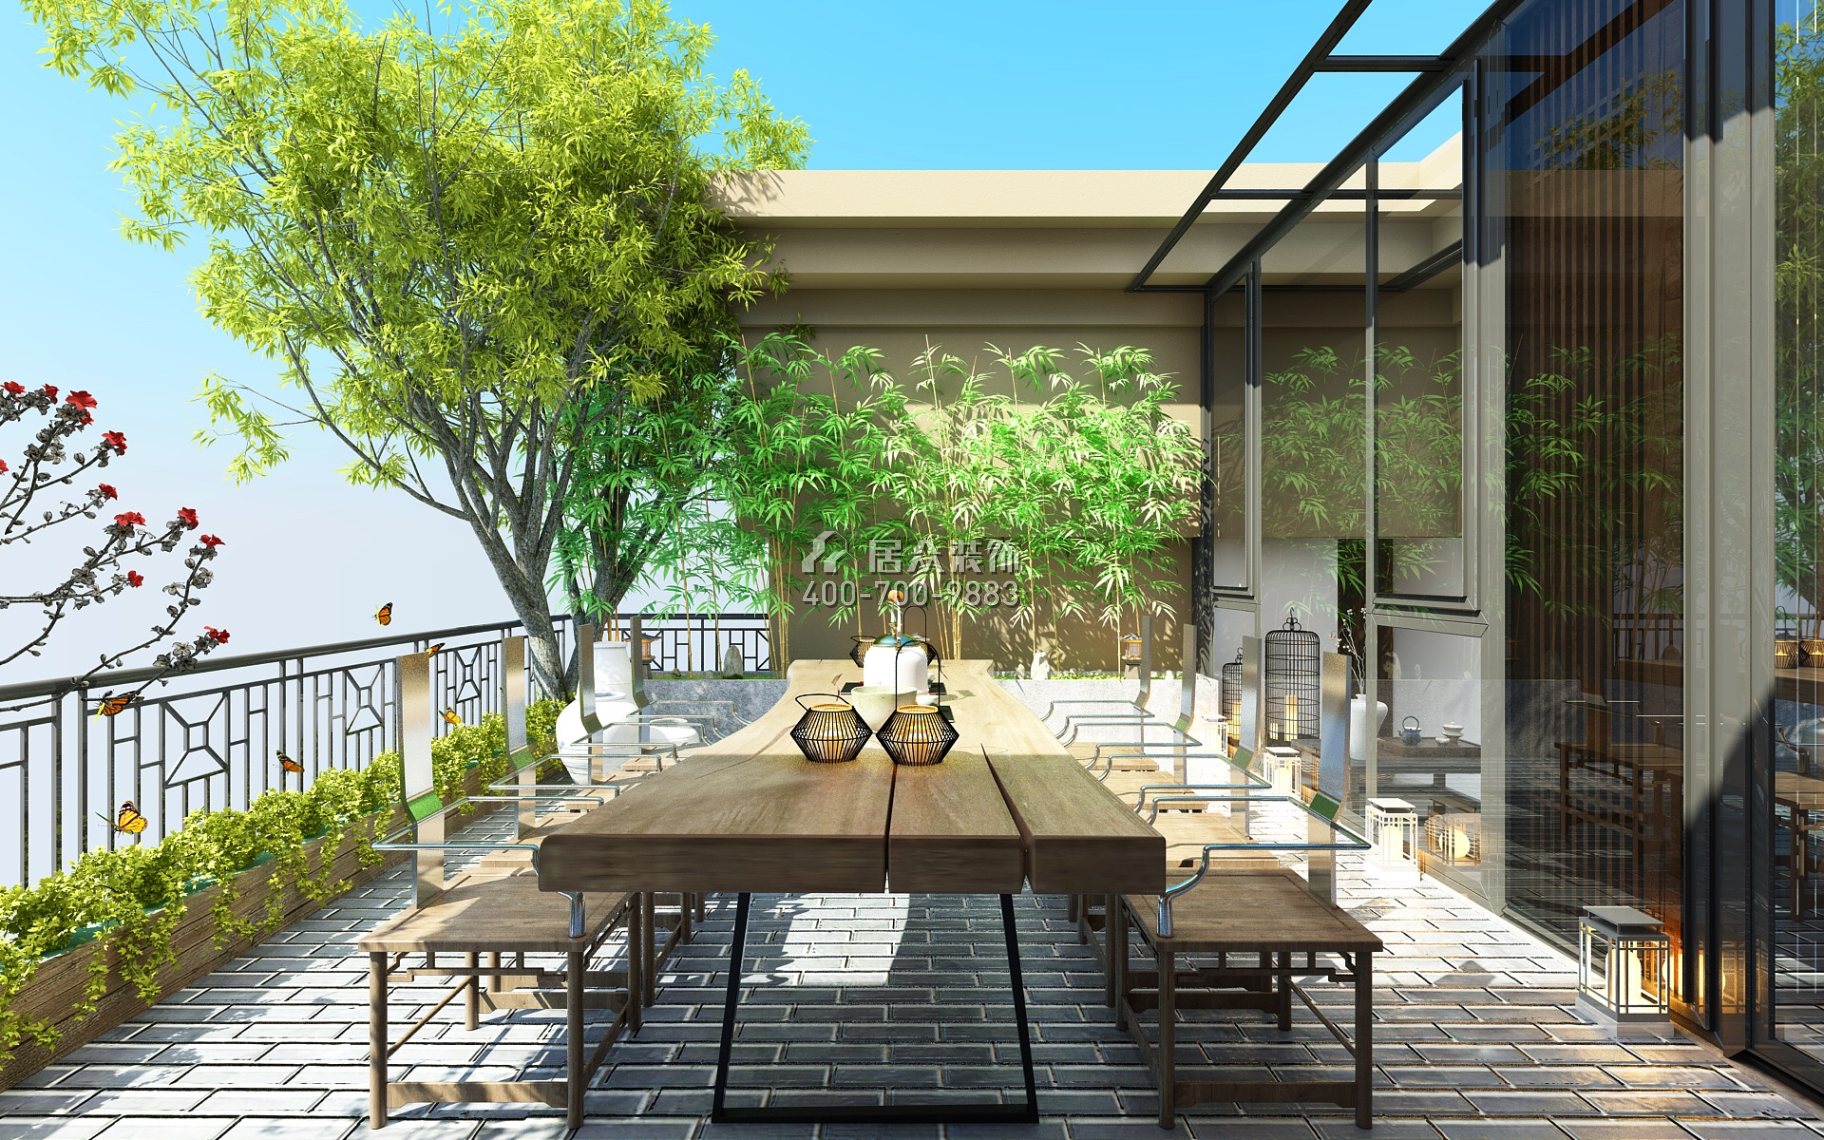 德景园274平方米中式风格复式户型阳台装修效果图